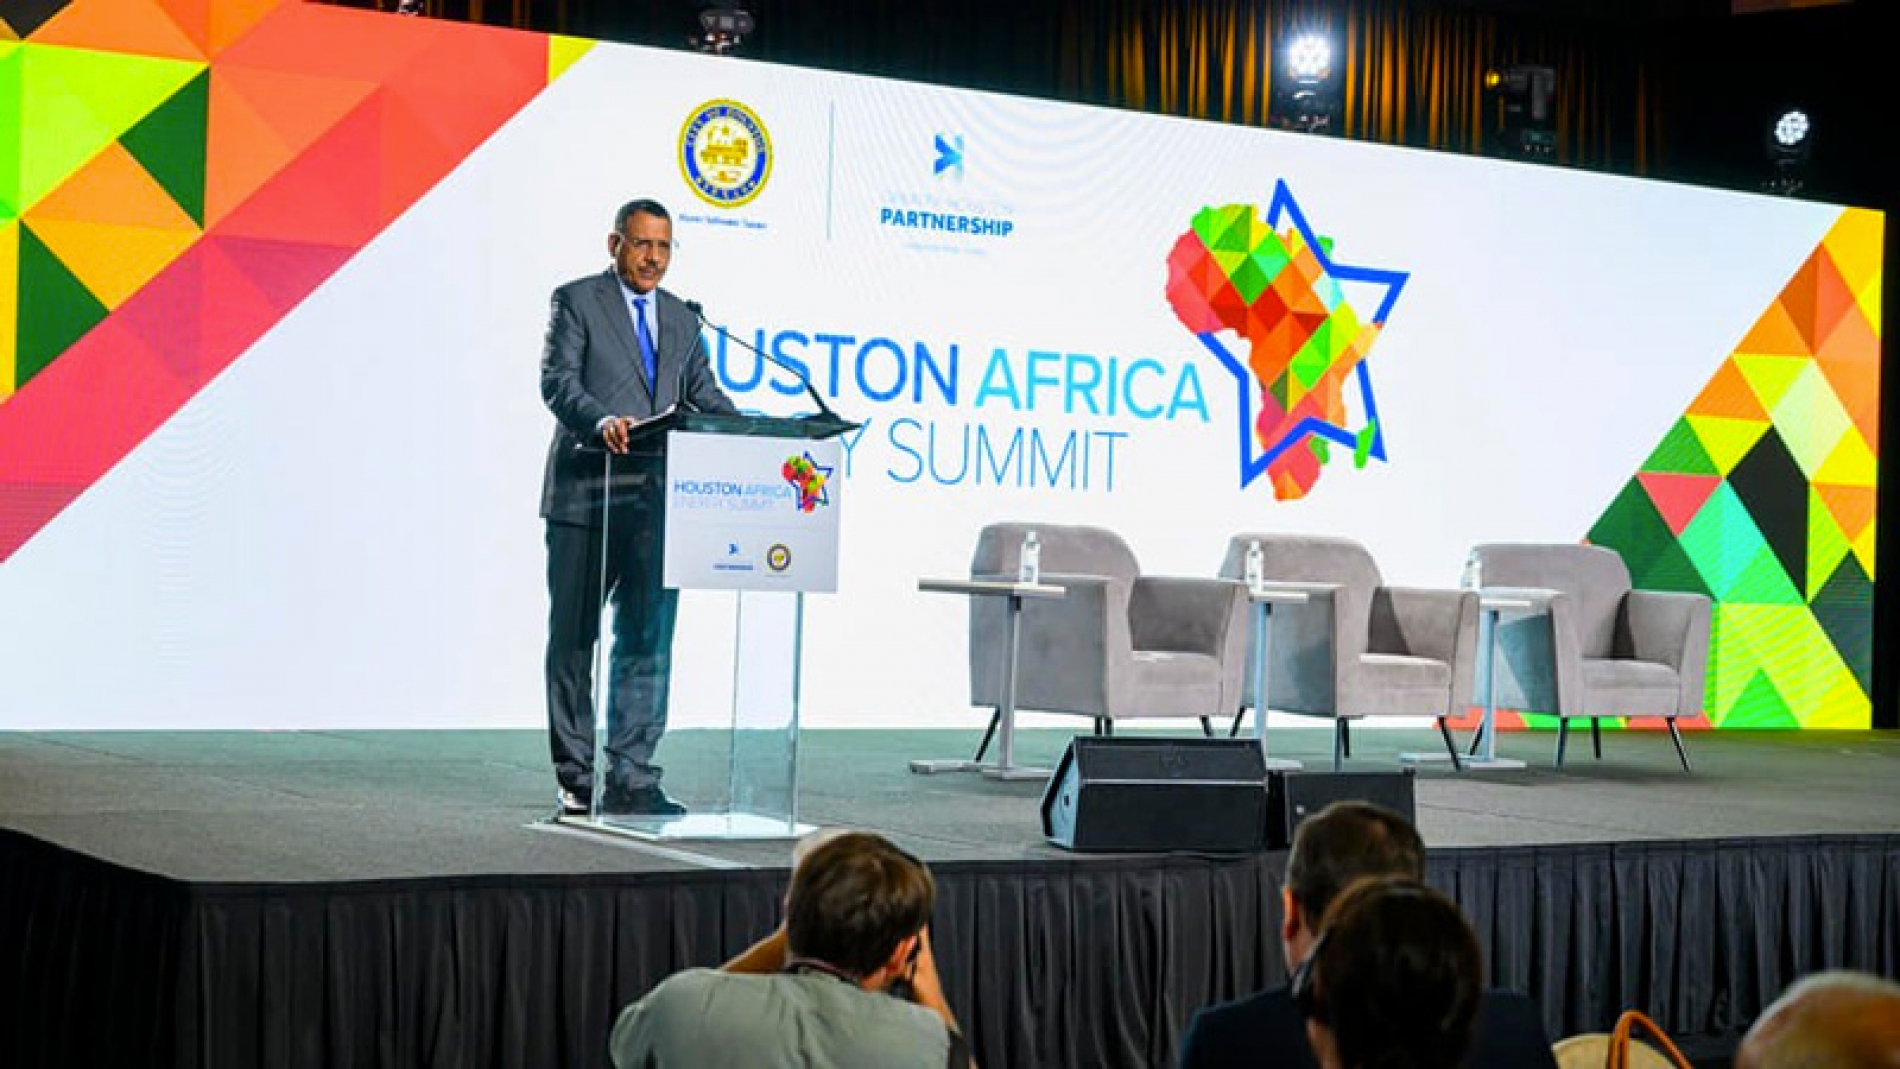 Le Chef de l’Etat de retour, hier, des Etats Unis d’Amérique : Après l’AG de l’ONU, le Président Mohamed Bazoum a pris part au Sommet sur l’énergie en Afrique à Houston